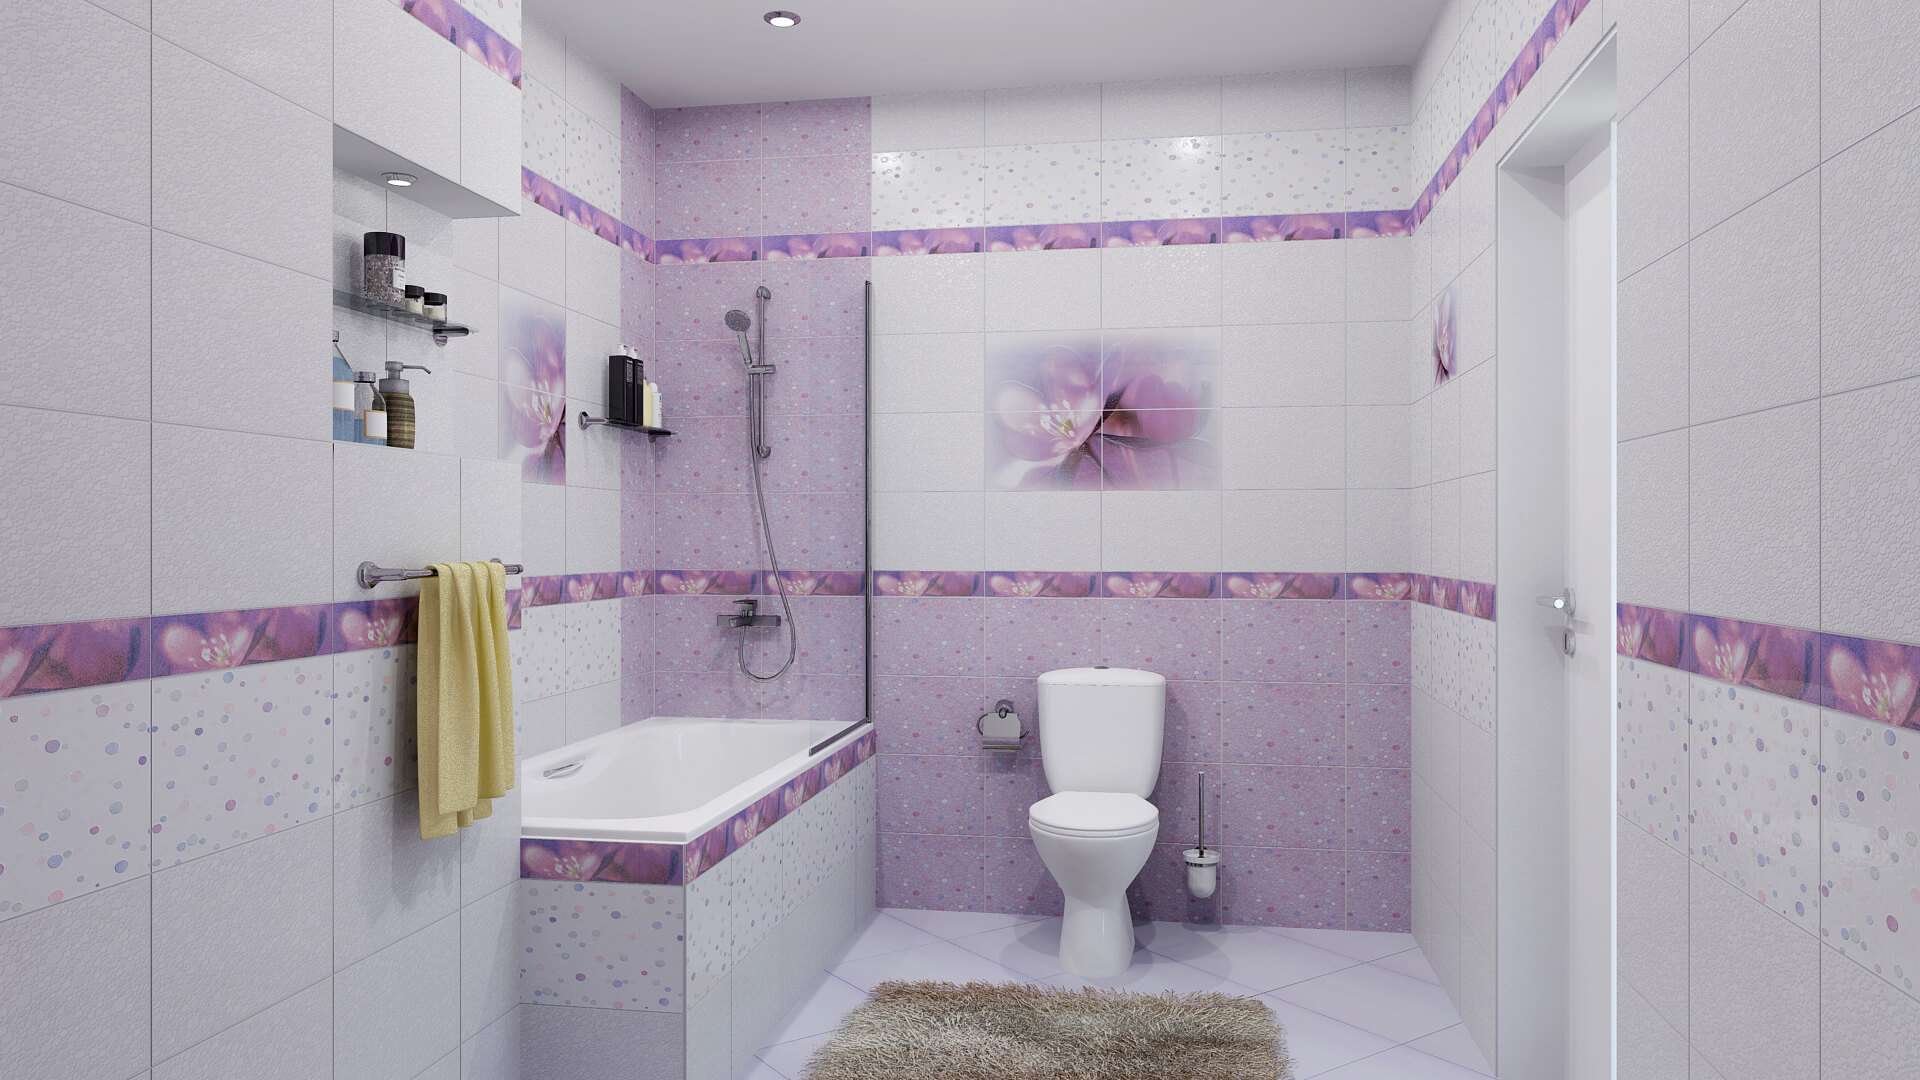 леруа мерлен москва плитка для ванной комнаты каталог